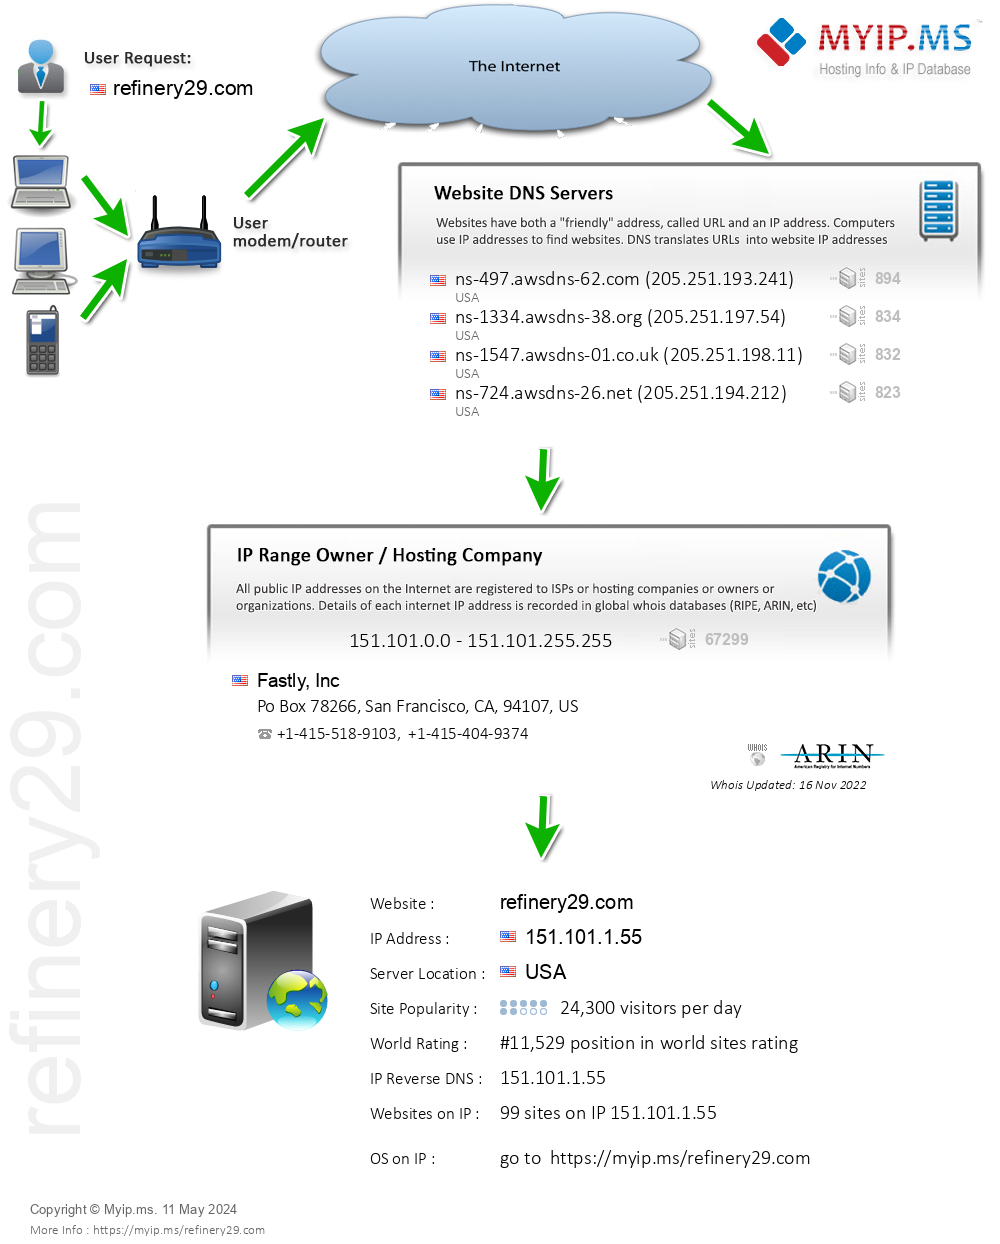 Refinery29.com - Website Hosting Visual IP Diagram